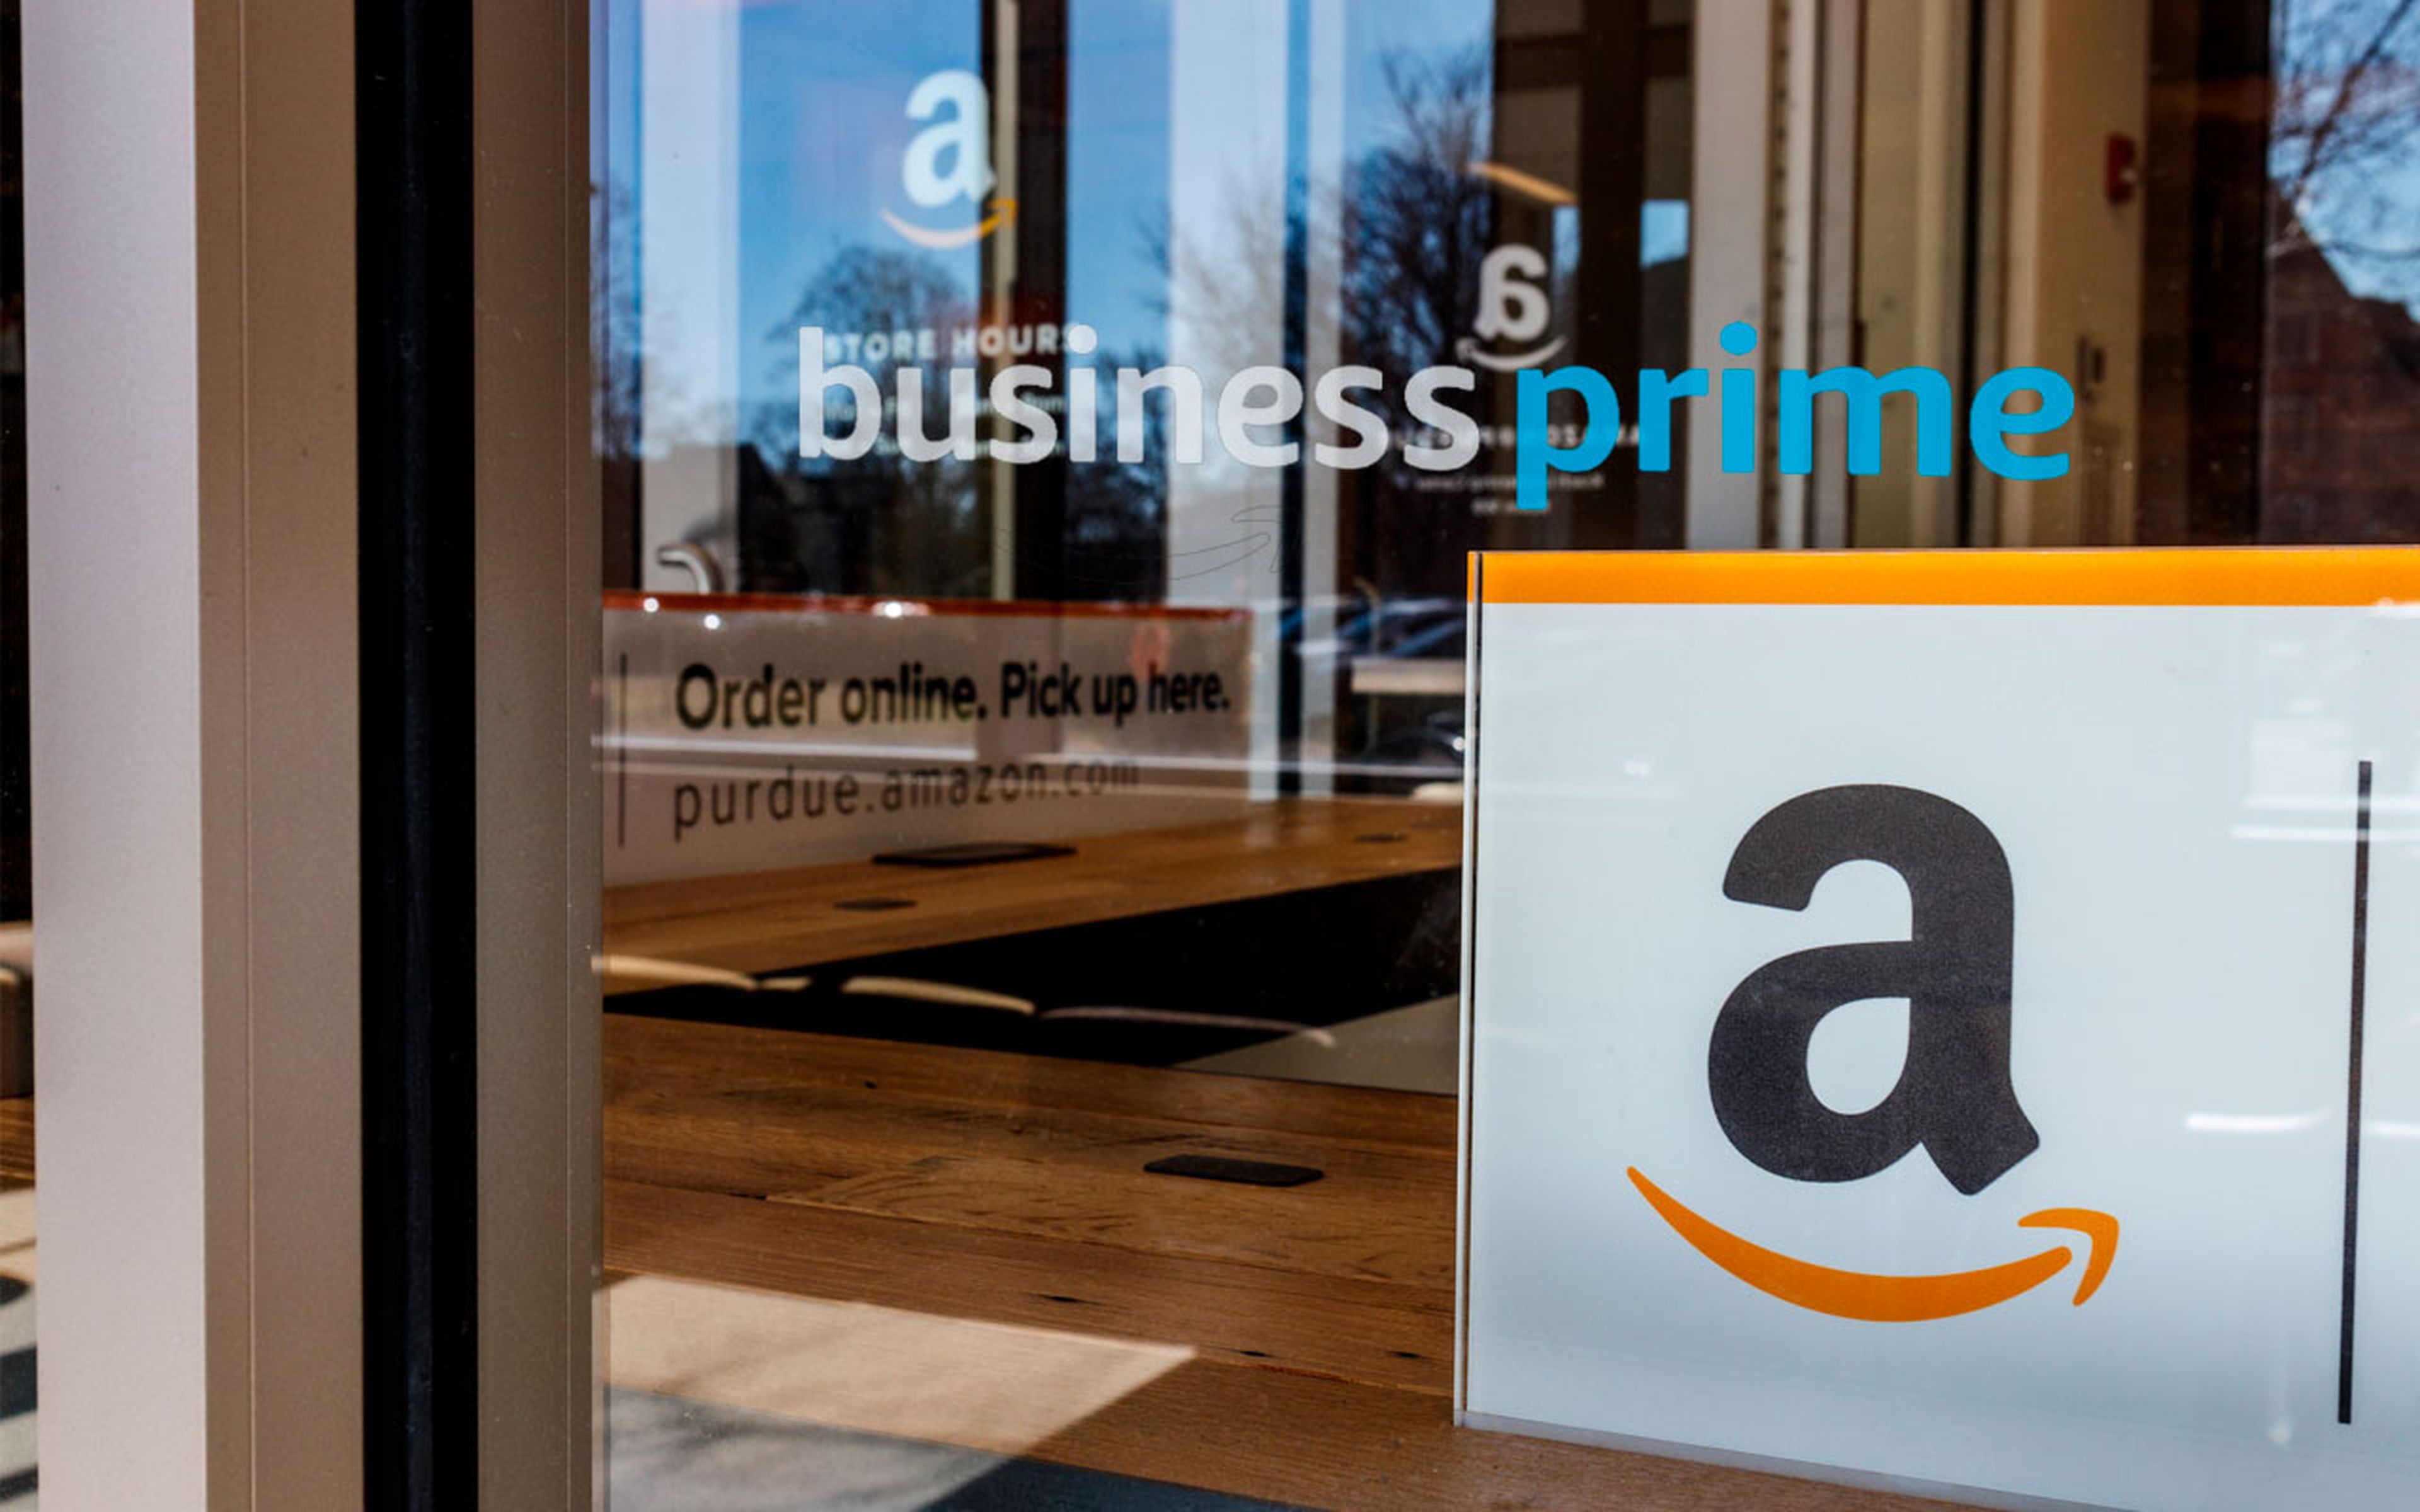 Amazon Business Prime, diferencias con Amazon Business y guía de uso para autónomos y empresas.